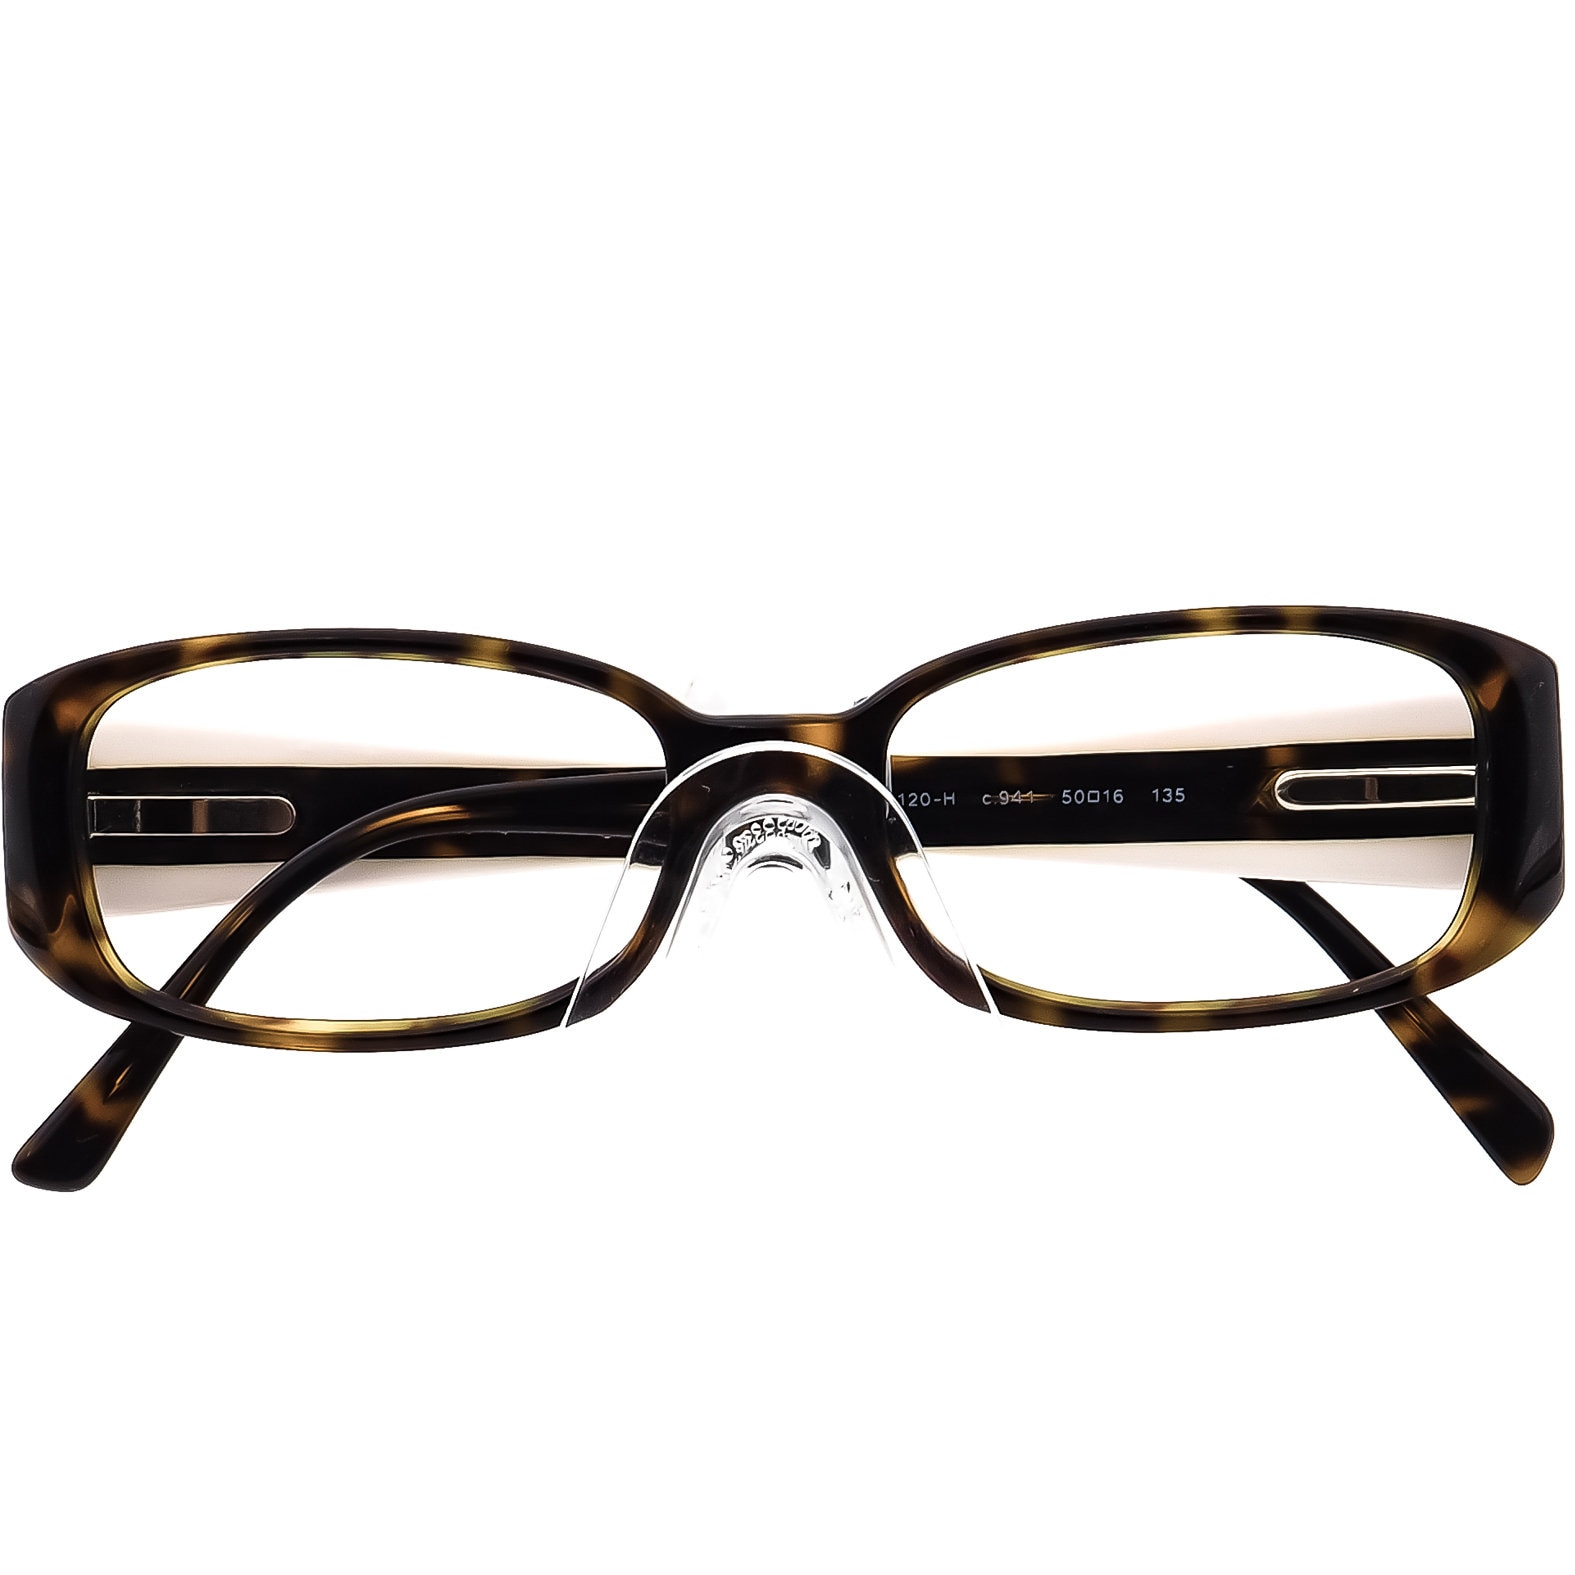 Chanel Eyeglasses 3120-H C.941 Tortoise Rectangular Frame 